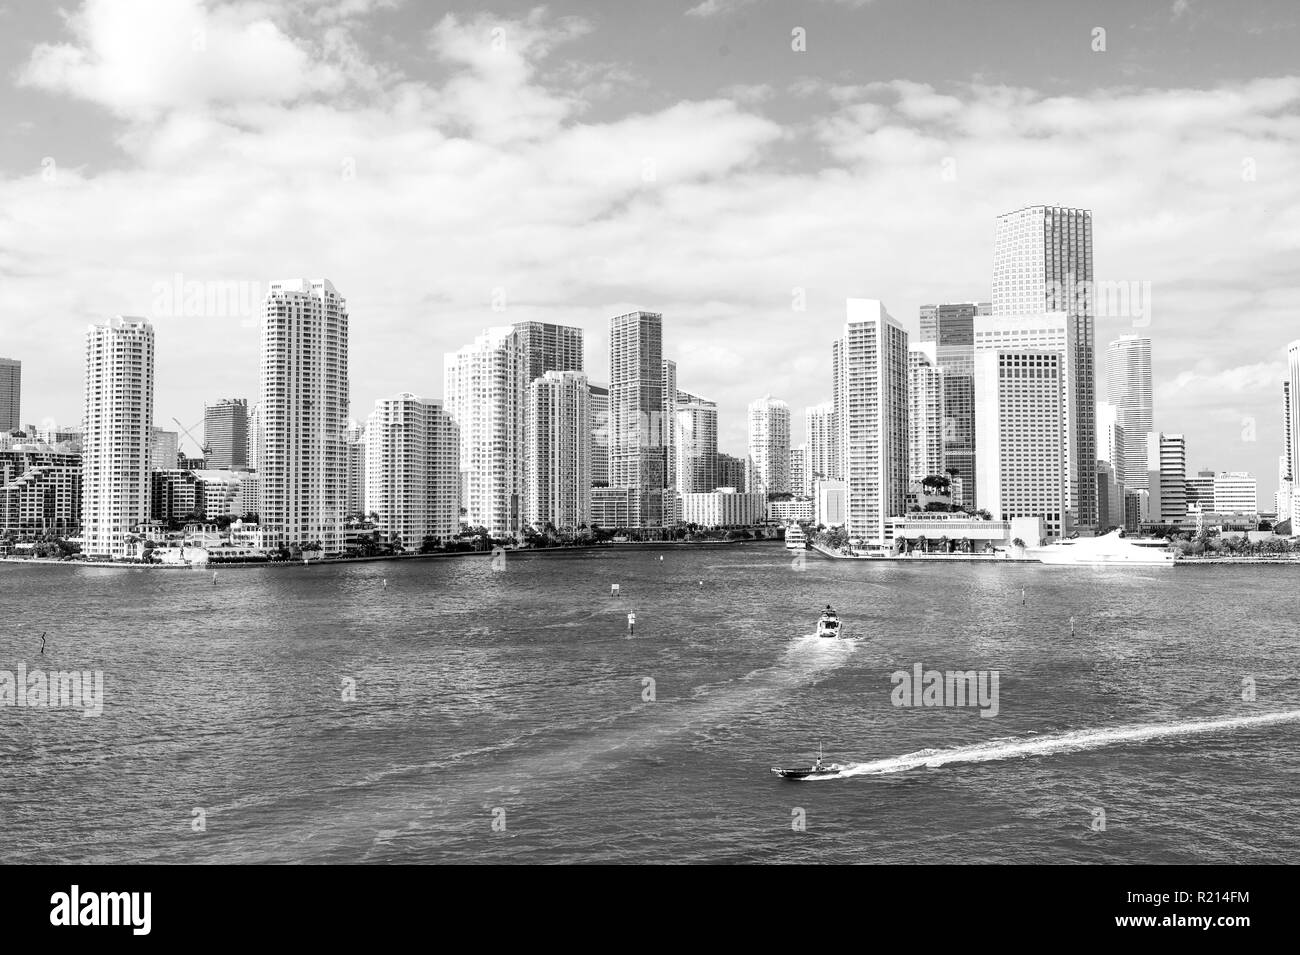 La ville de Miami. Yachts voile sur mer ou l'eau de mer de gratte-ciel sur ciel nuageux ciel bleu à Miami, États-Unis. Des vacances d'été, wanderlust voyager, concept. Banque D'Images